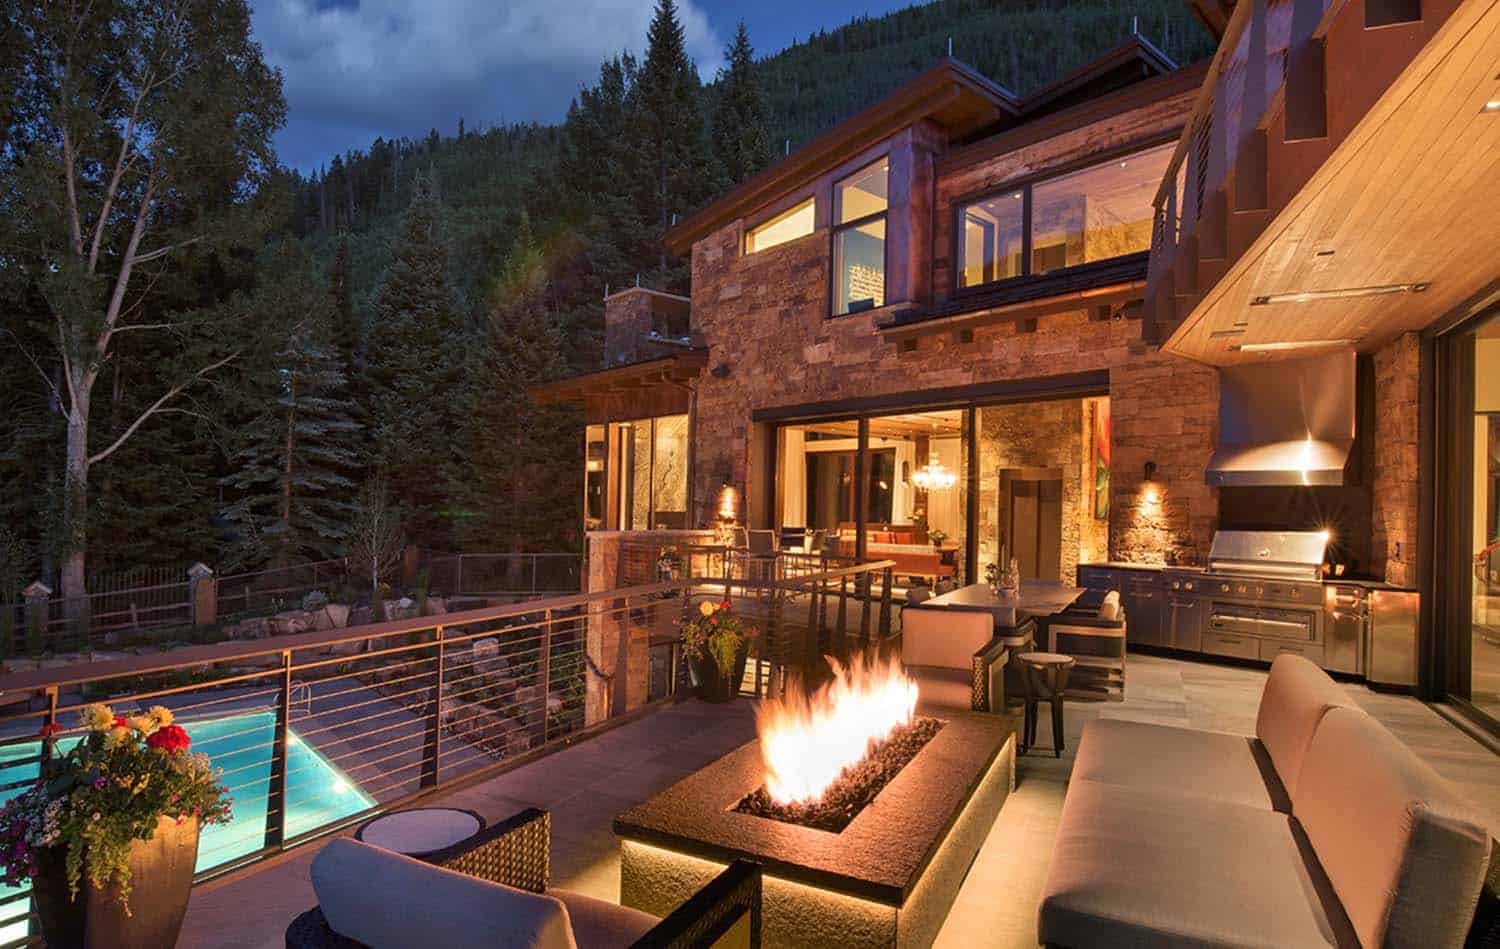 Sumptuous mountain contemporary home in Vail, Colorado